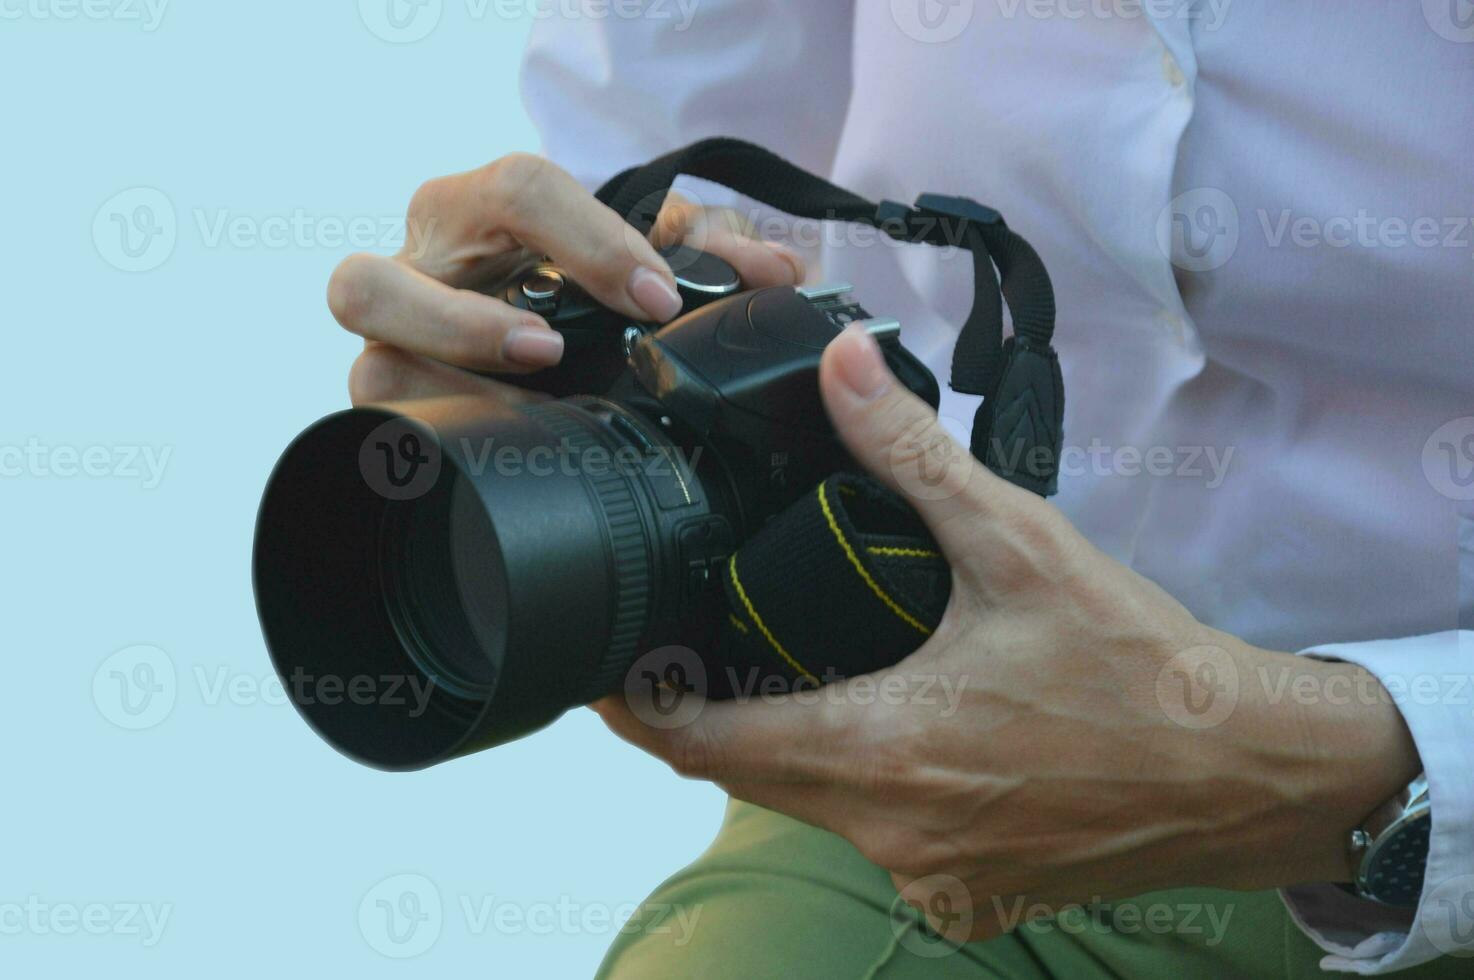 une professionnel photo caméra dans le mains de une femme dans une blanc chemise sur une bleu Contexte. une fille photographe détient une caméra dans sa main.